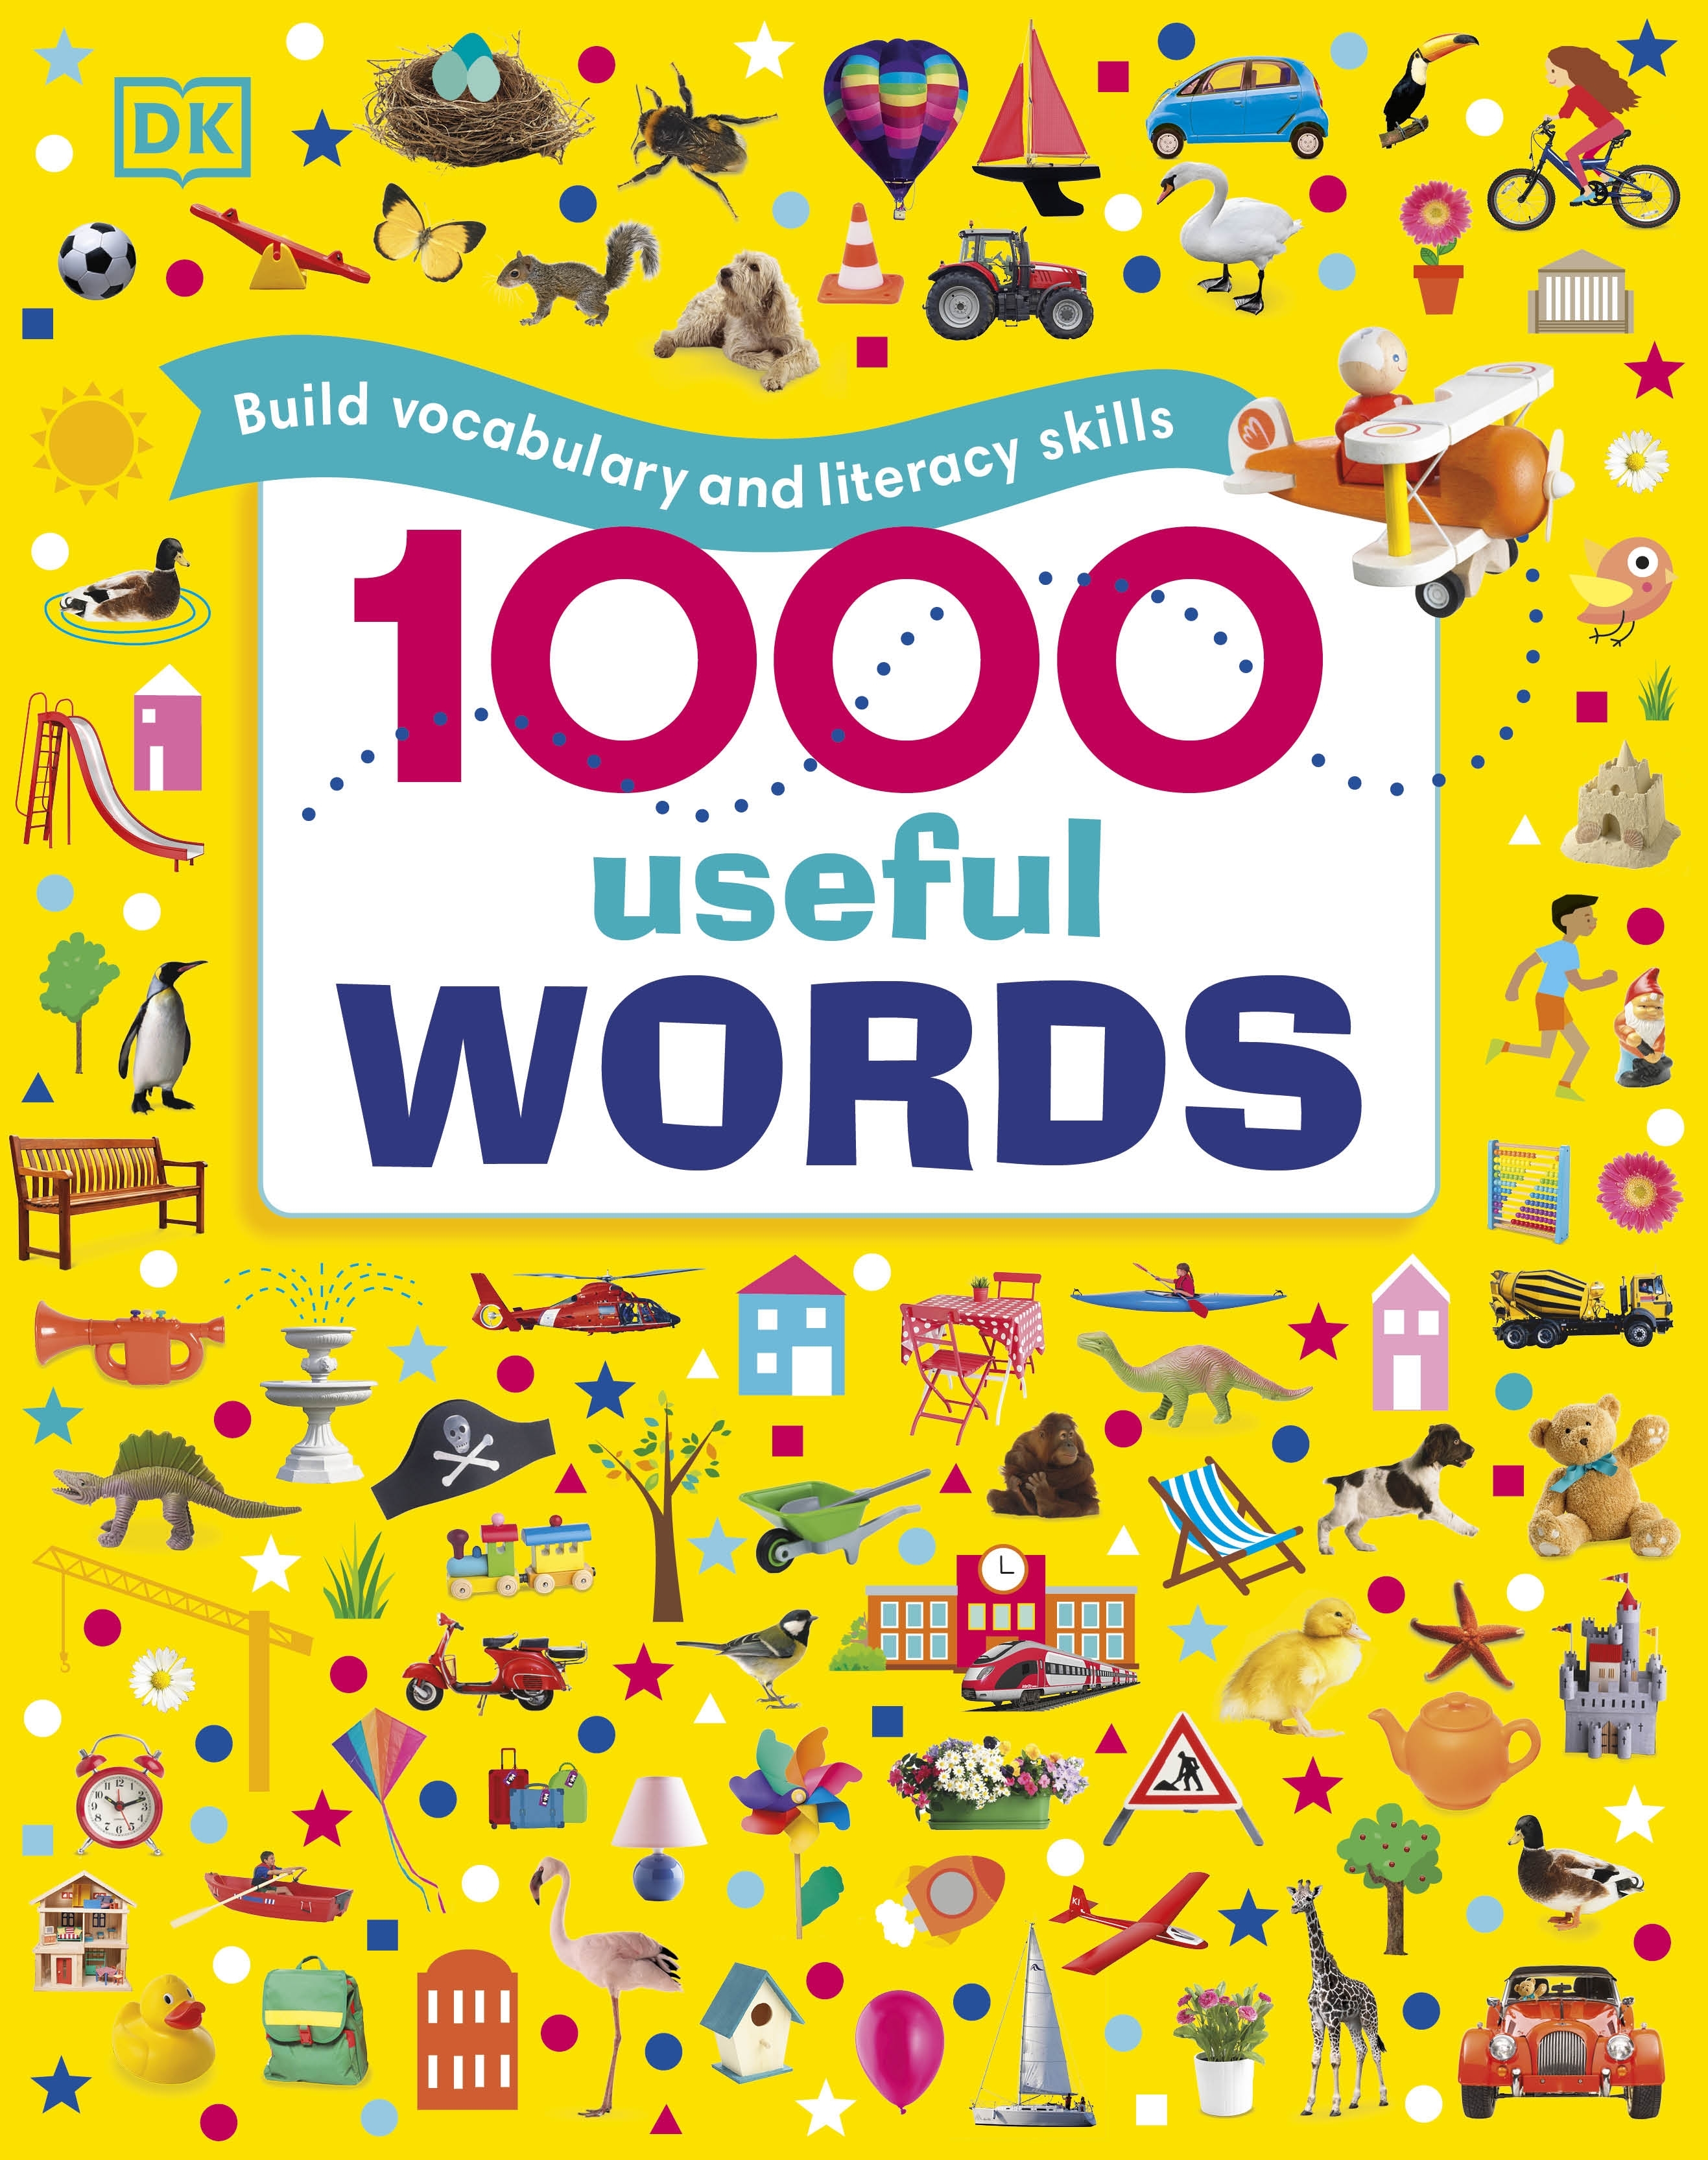 1000 Useful Words By Dk Penguin Books Australia 